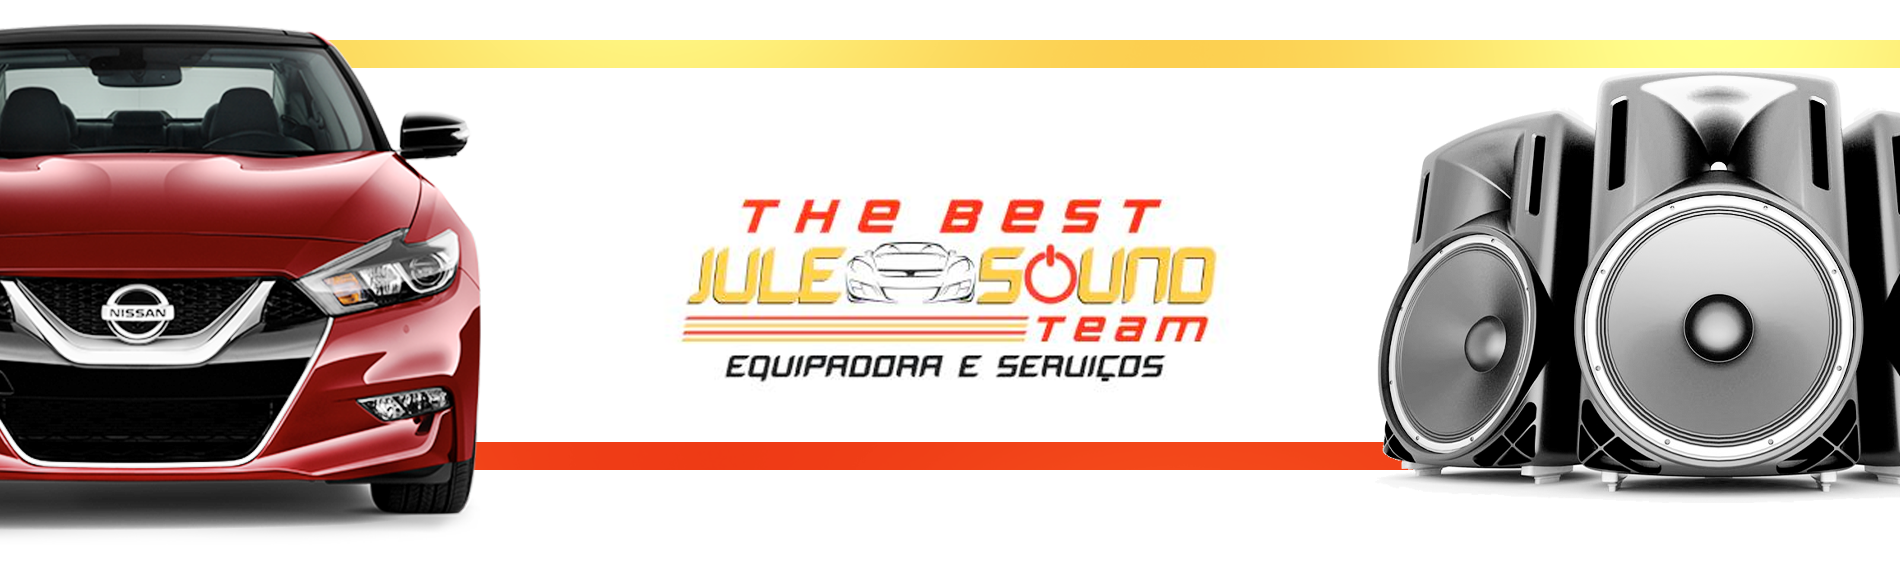 Jule Sound Team Equipadora e Serviços